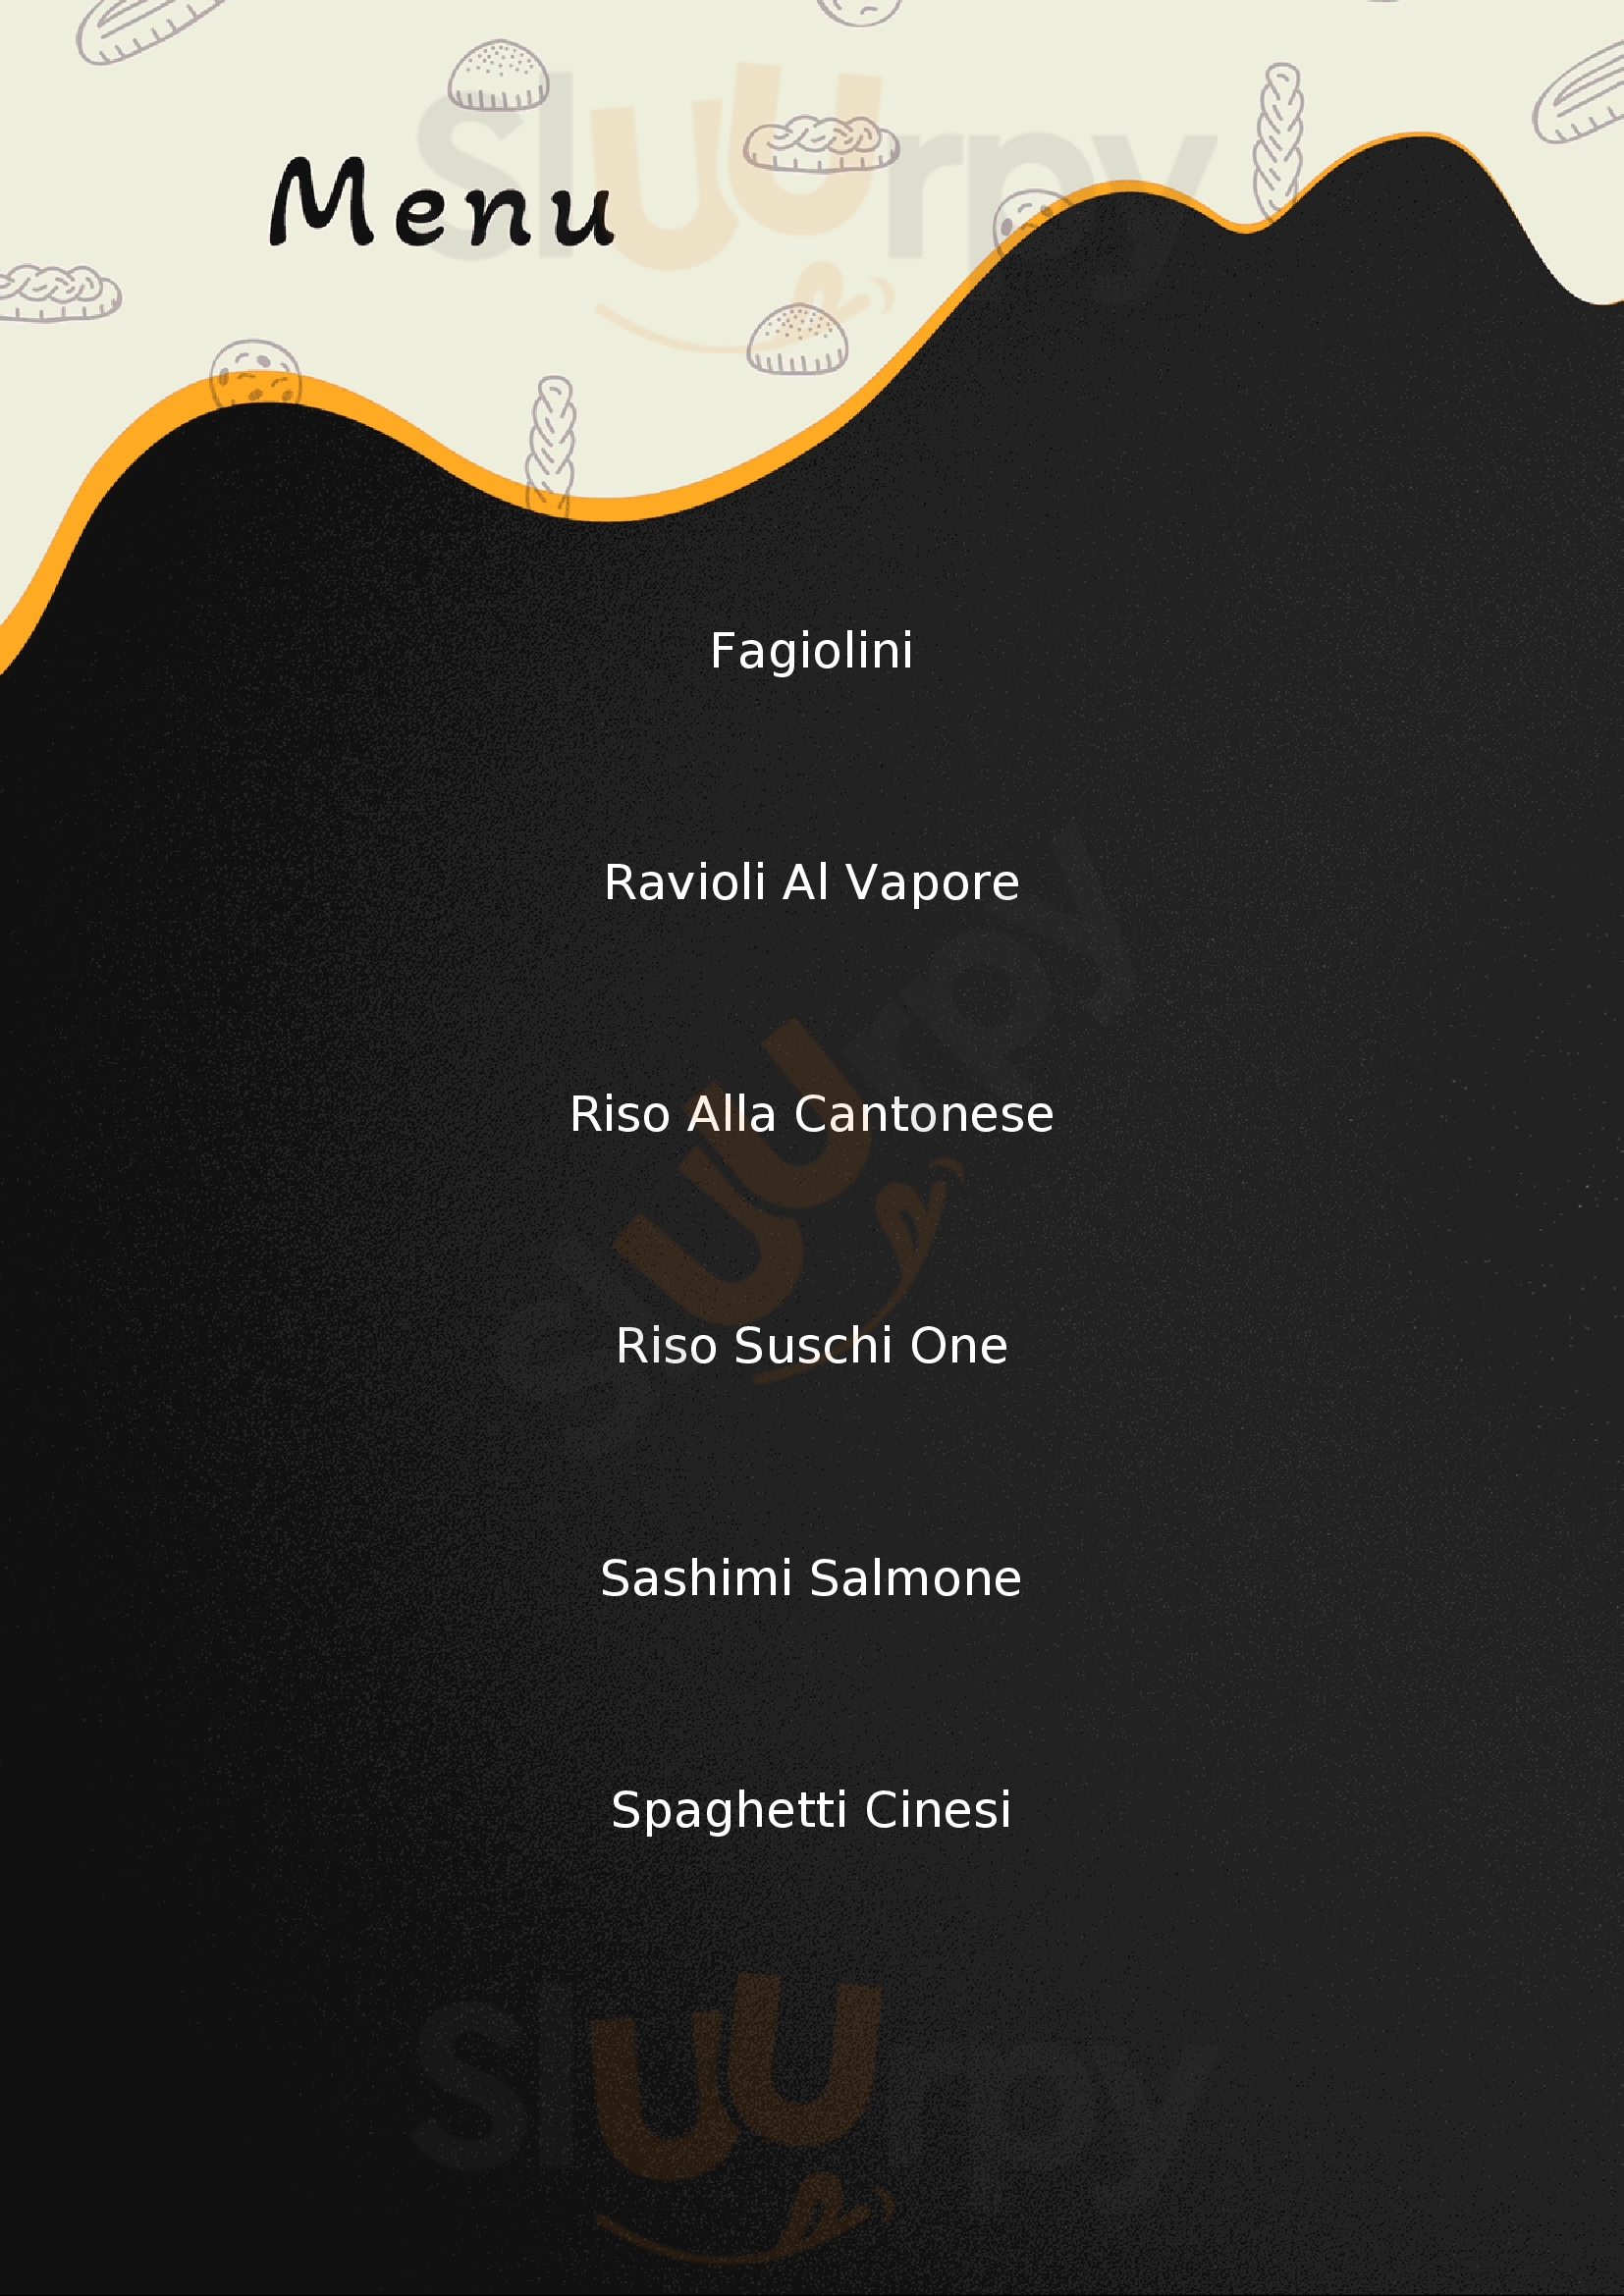 Ristorante Sushi One Figline e Incisa Valdarno menù 1 pagina